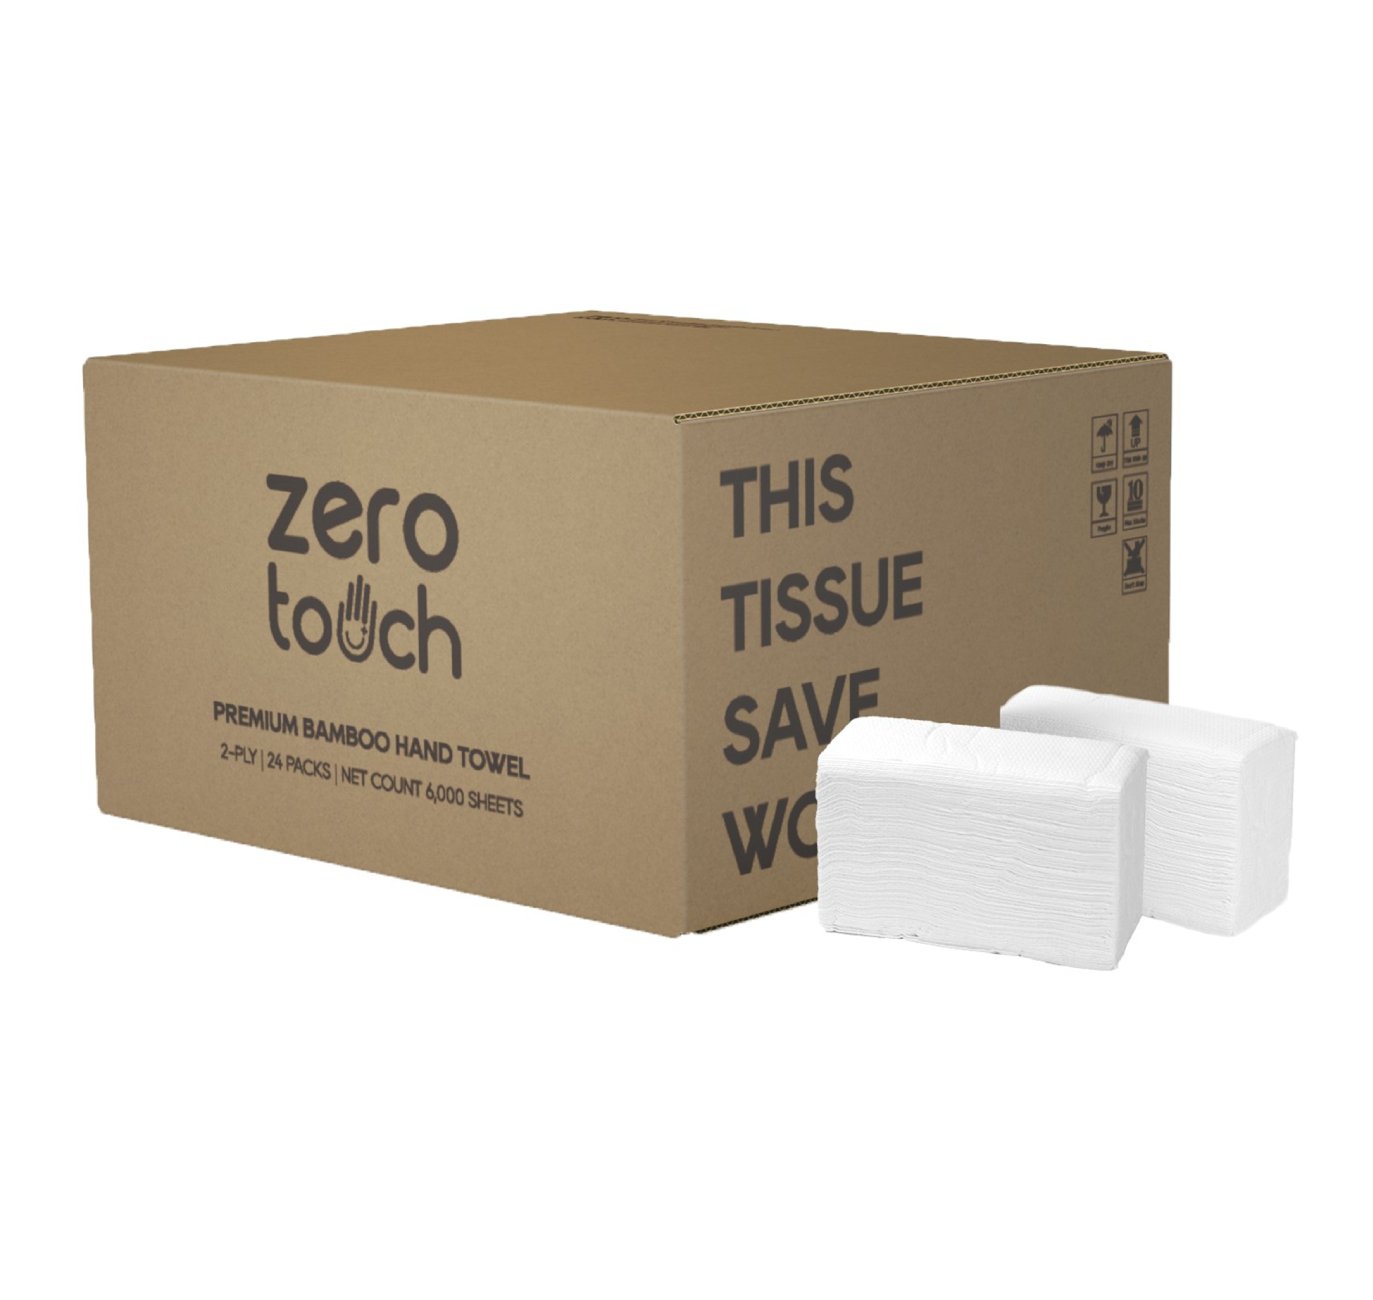 ZERO-TOUCH ทิชชู่เยื่อกระดาษบริสุทธิ์ 100% สำหรับเช็ดมือ (16 ห่อ/ลัง, 250แผ่น/ห่อ)